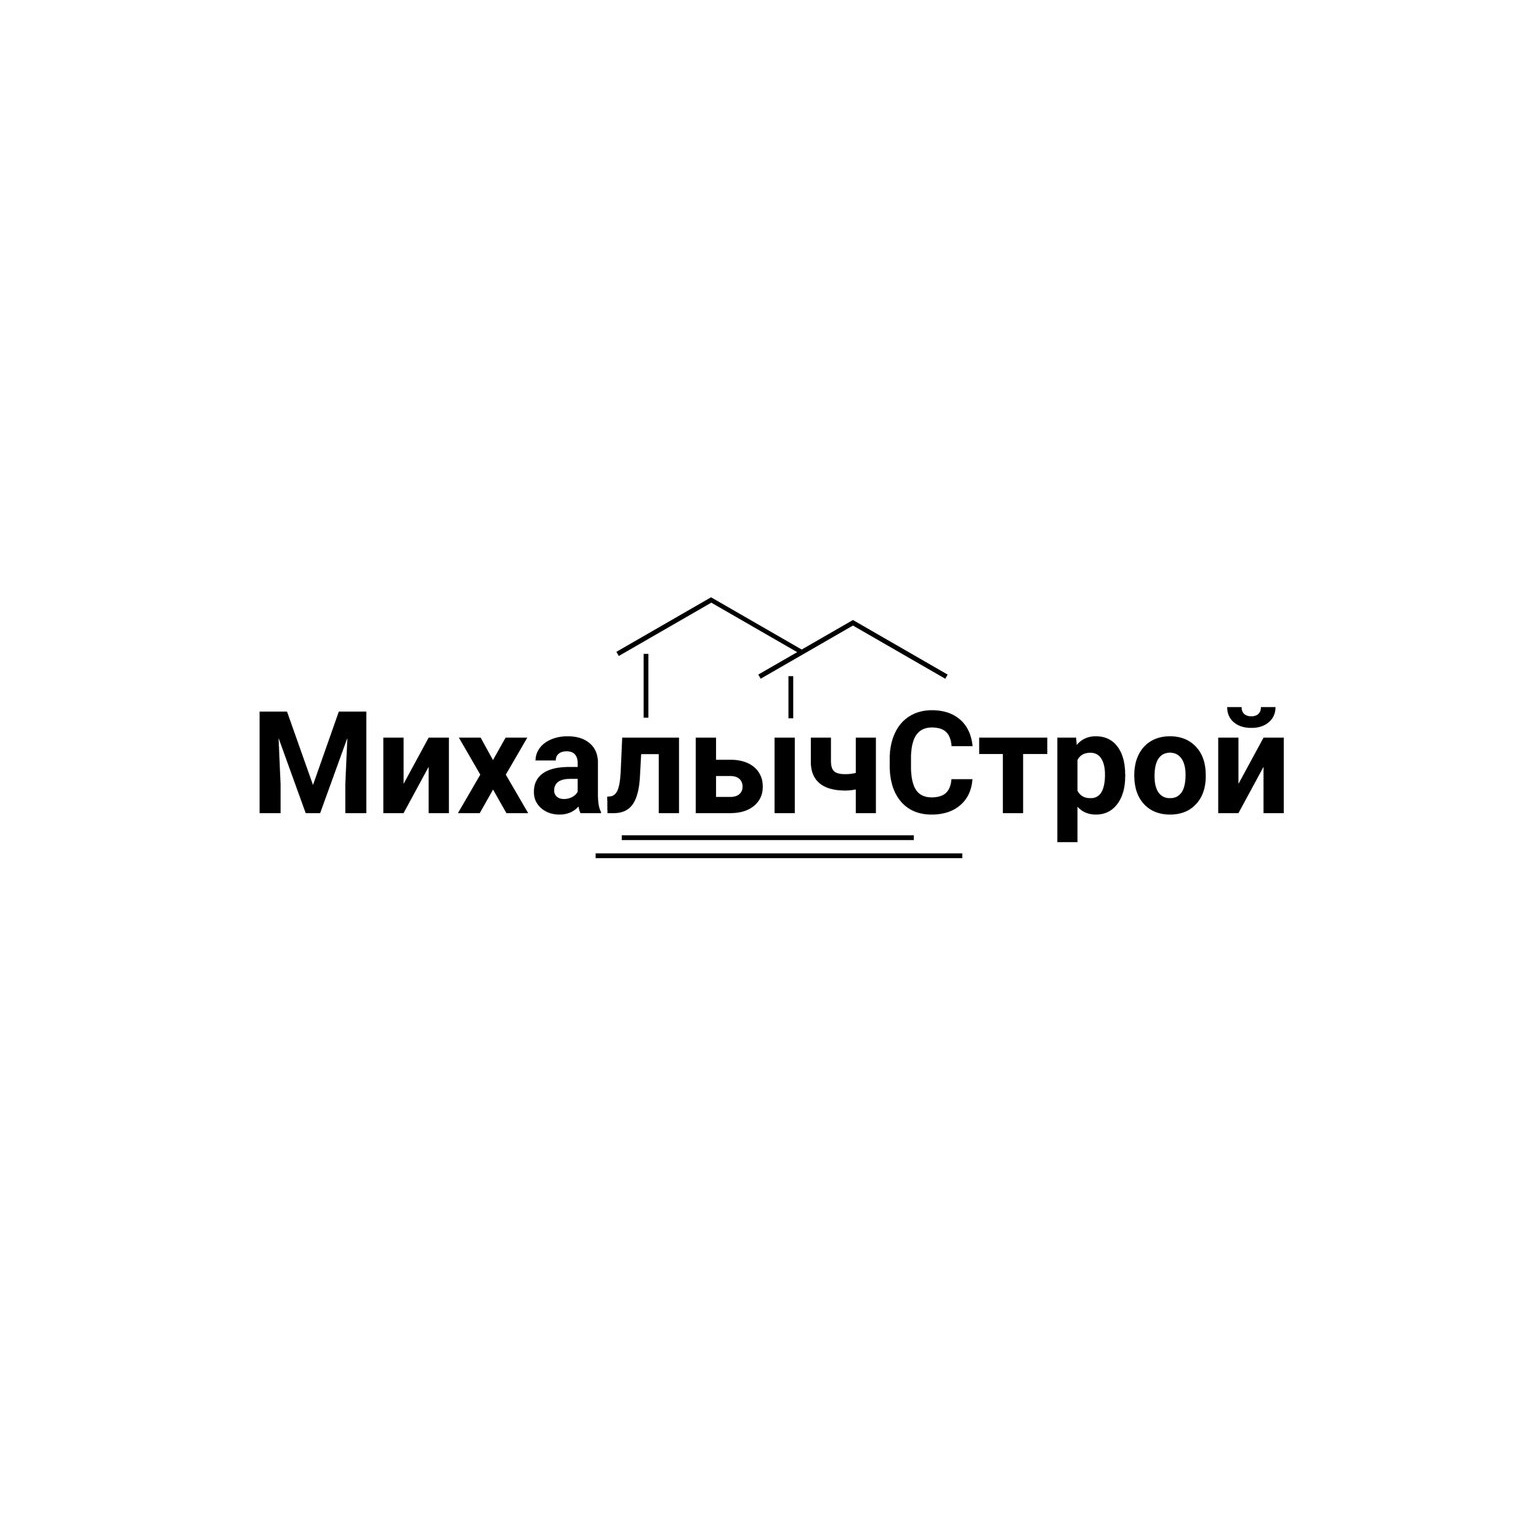 Фото / логотип МихалычСтрой, Санкт-Петербург